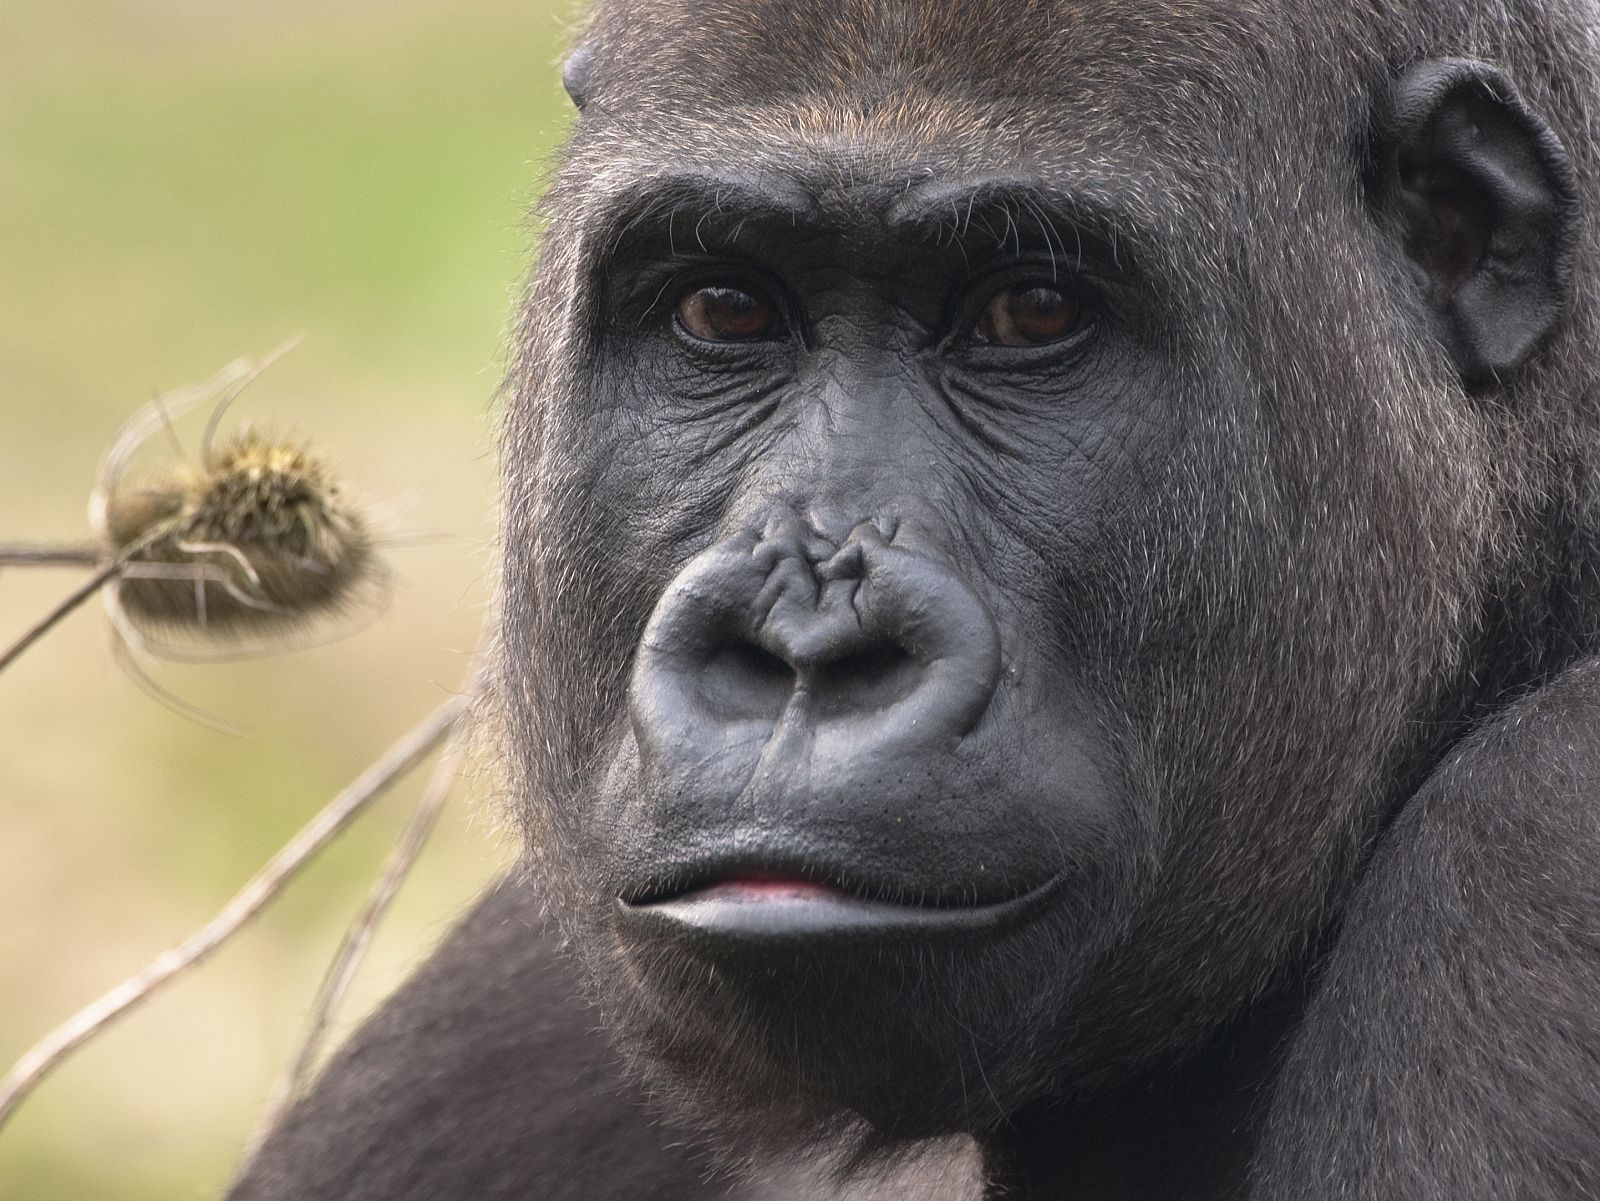 En un tercio del genoma humano se pueden apreciar más parecidos con el gorila que con el chimpancé.